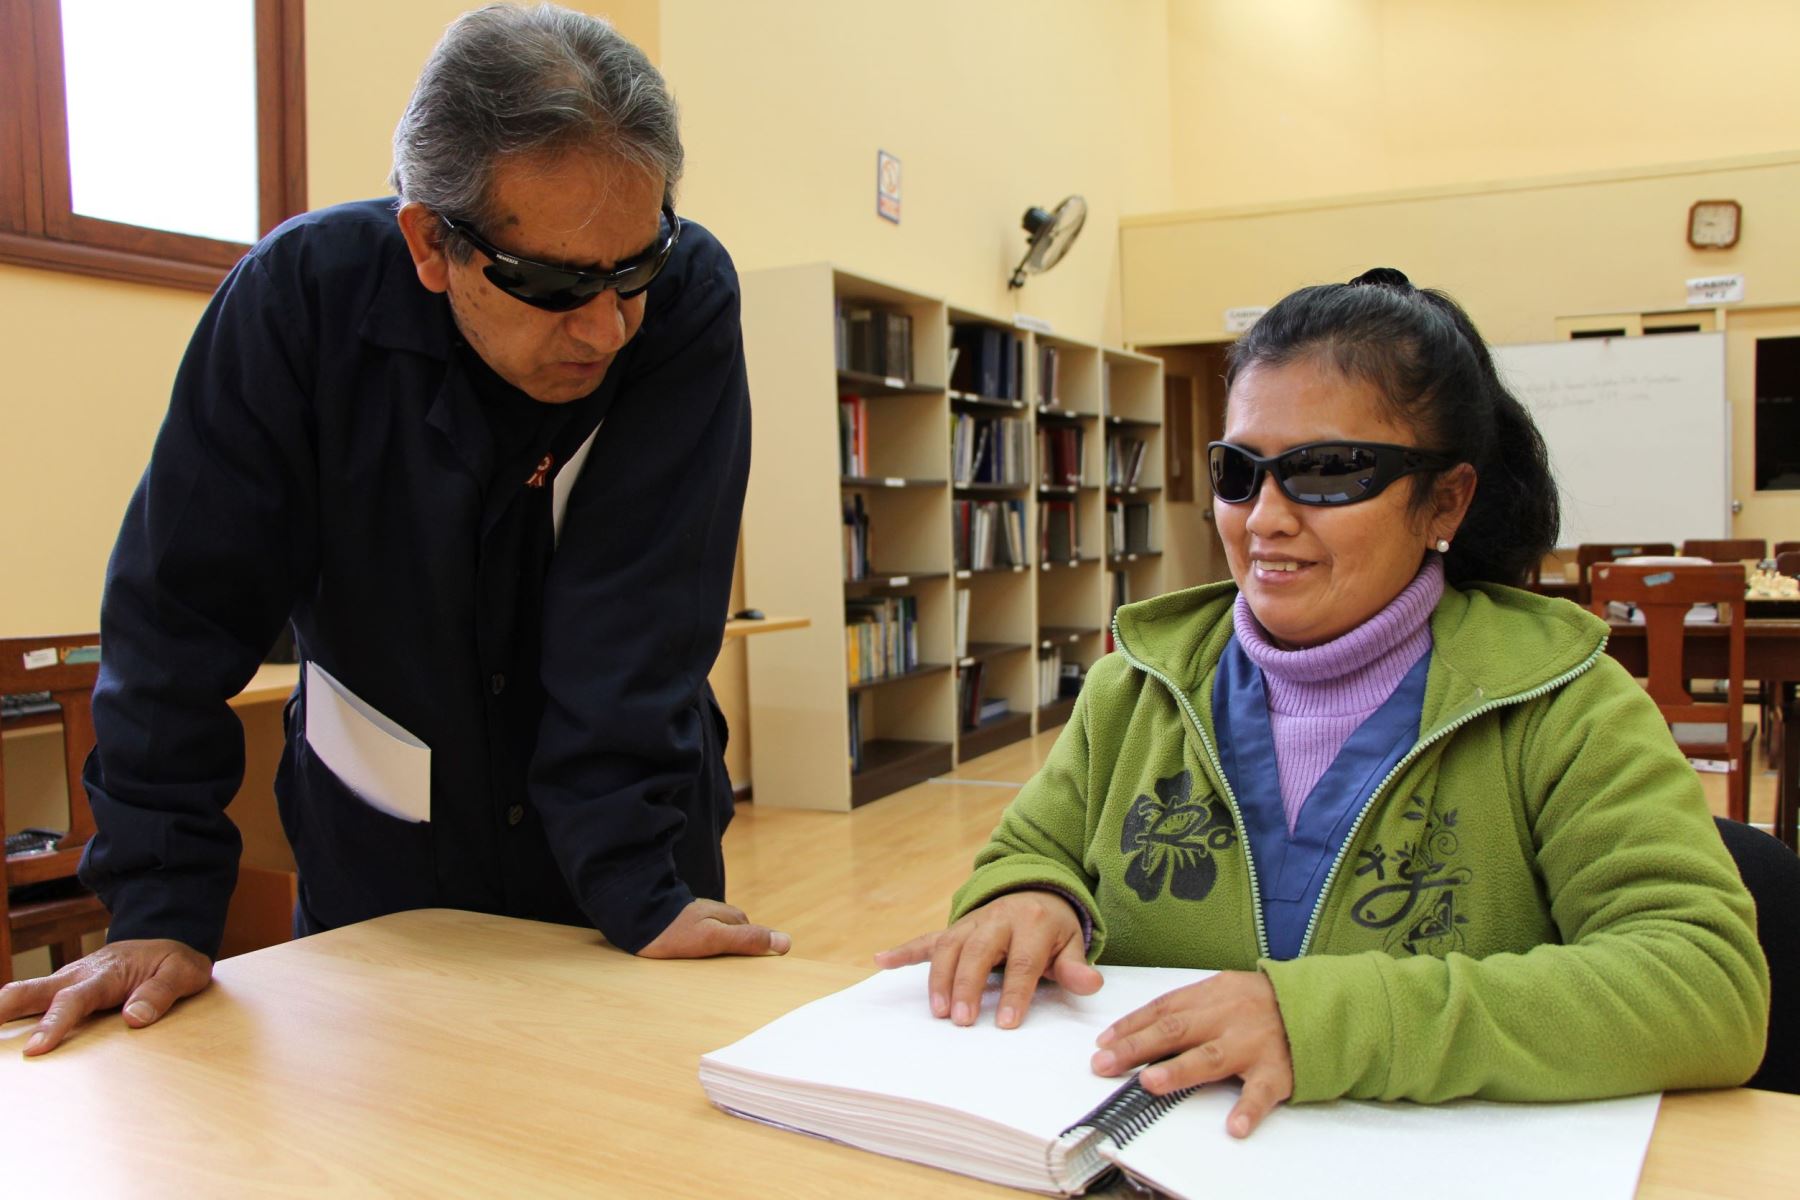 BNP imprime libro de Harry Potter en braille a pedido de persona con discapacidad visual.